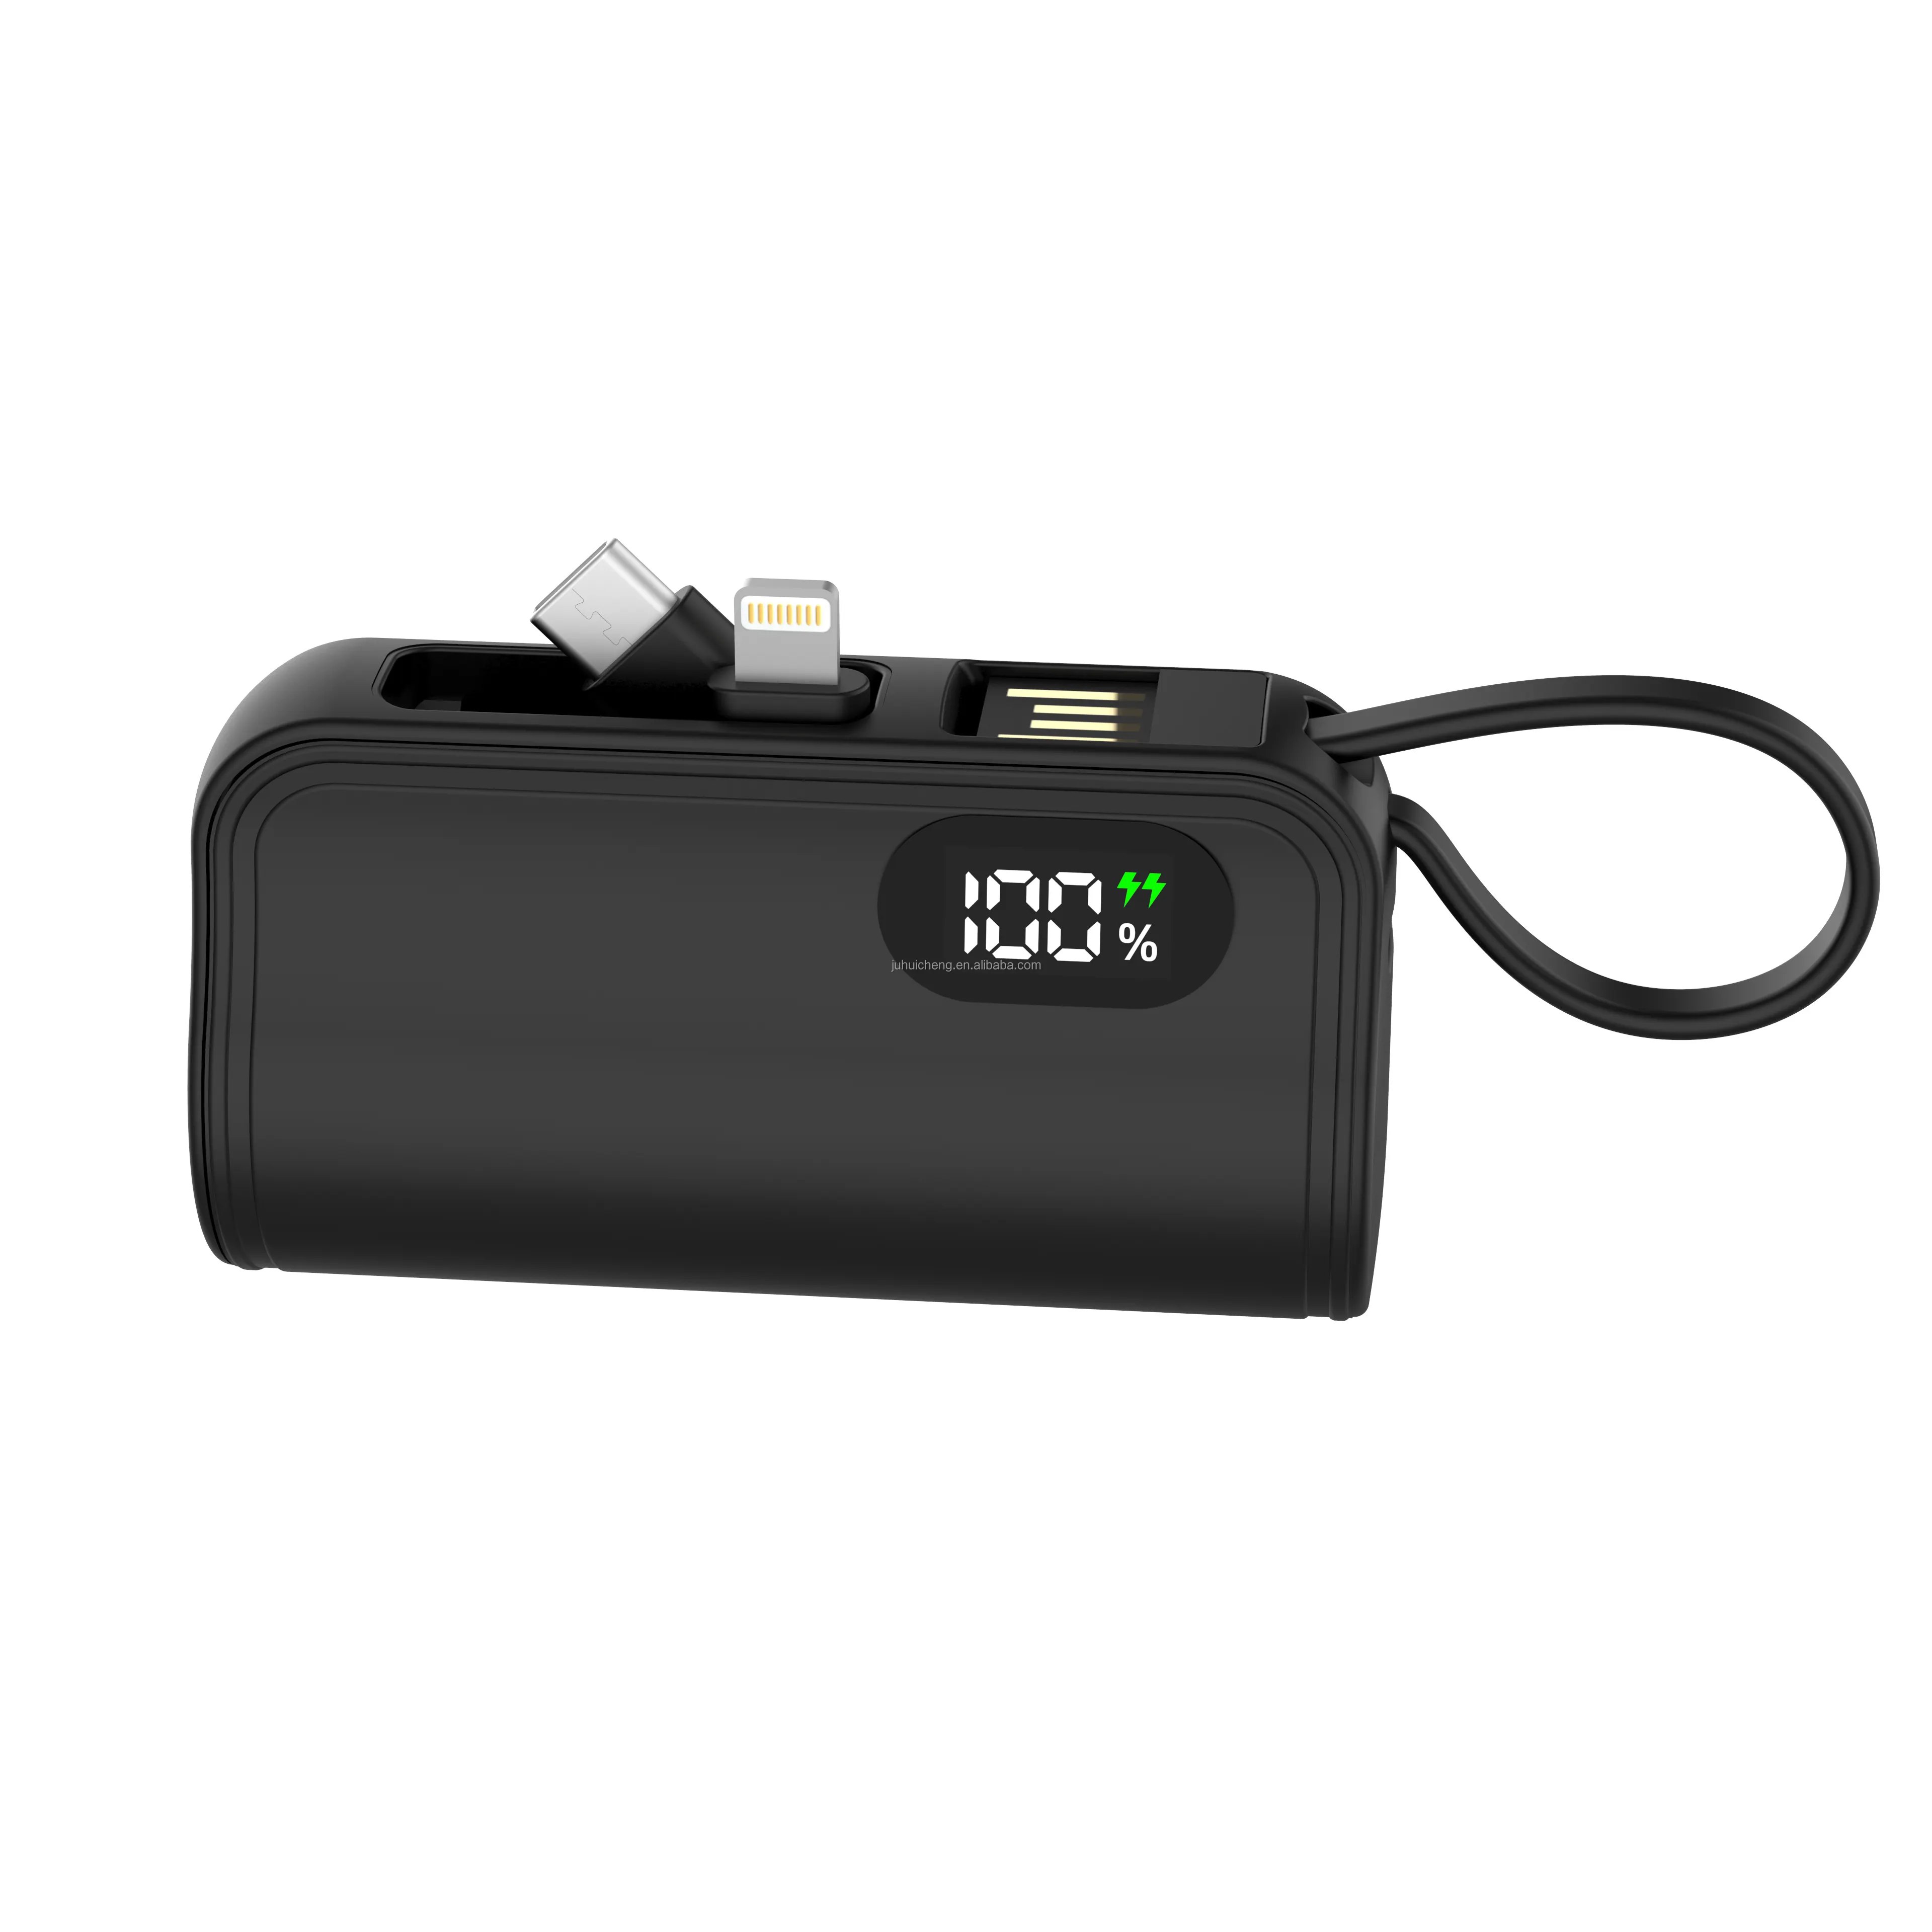 Chaveiro portátil para carro com display LED, baterias de íon de lítio 5000mAh 3000mAh, mini chaveiro para banco de potência